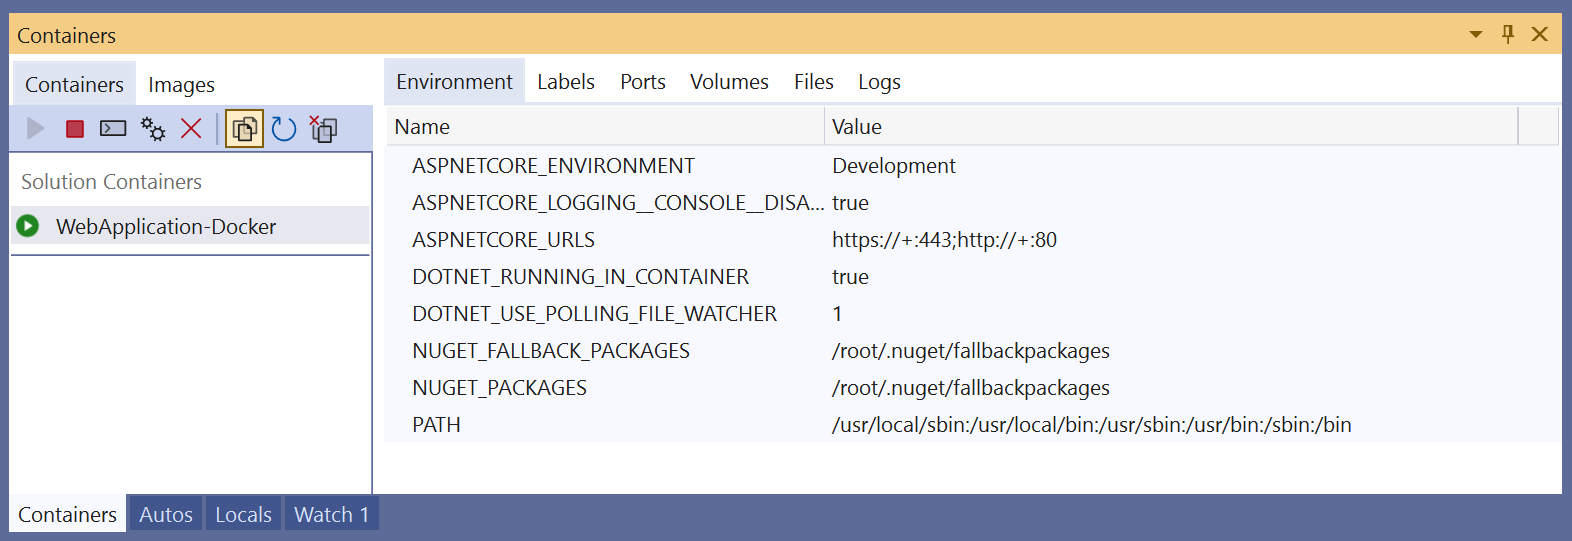 Capture d’écran de la fenêtre Conteneurs dans Visual Studio montrant les variables d’environnement d’un conteneur.